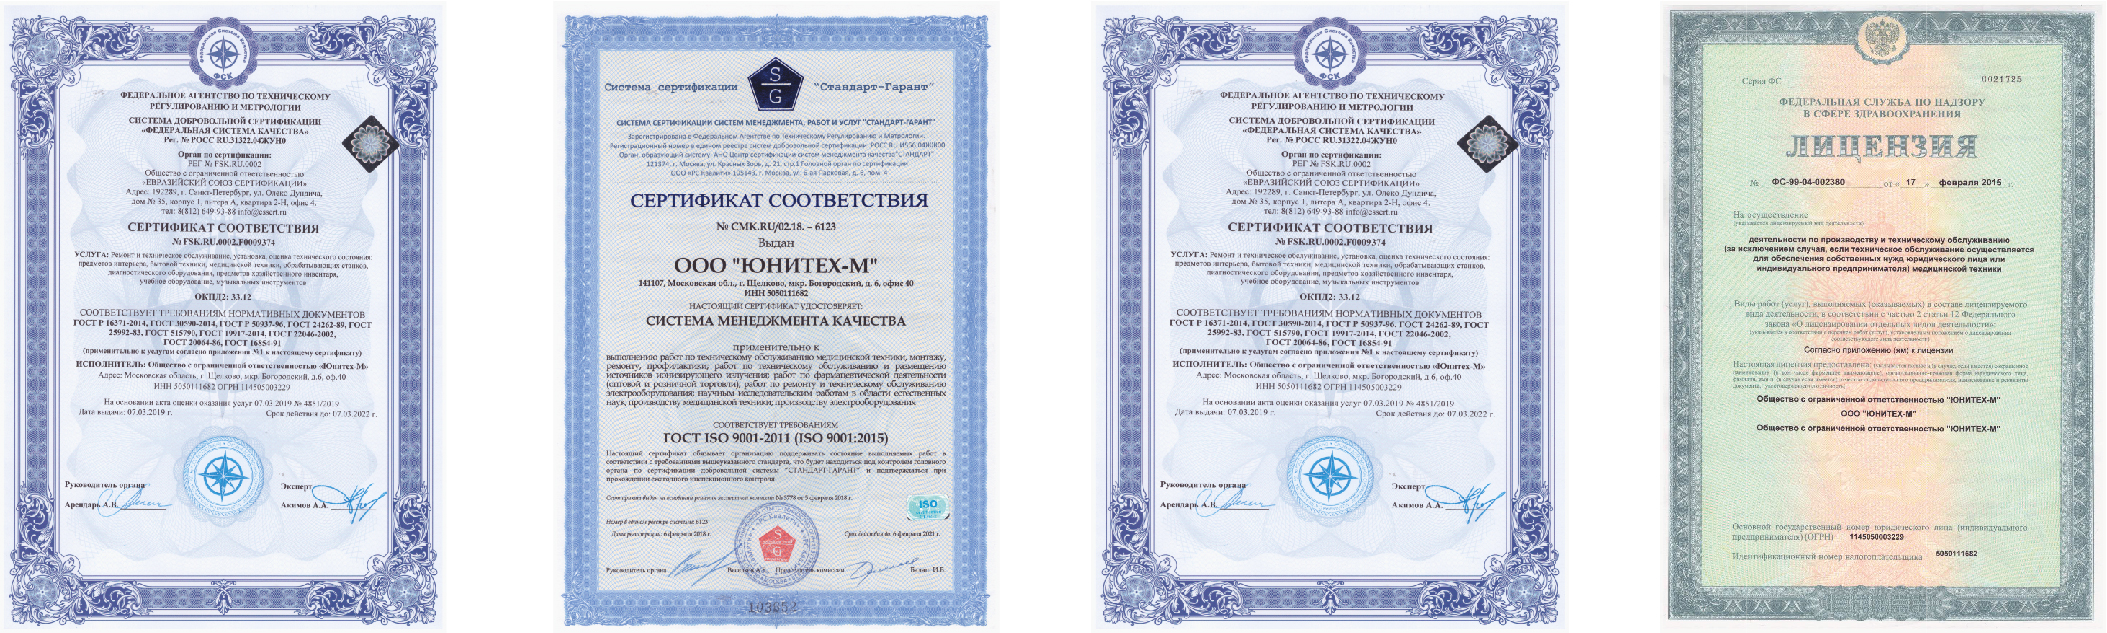 Лицензии и сертификаты ООО Юнитех-М